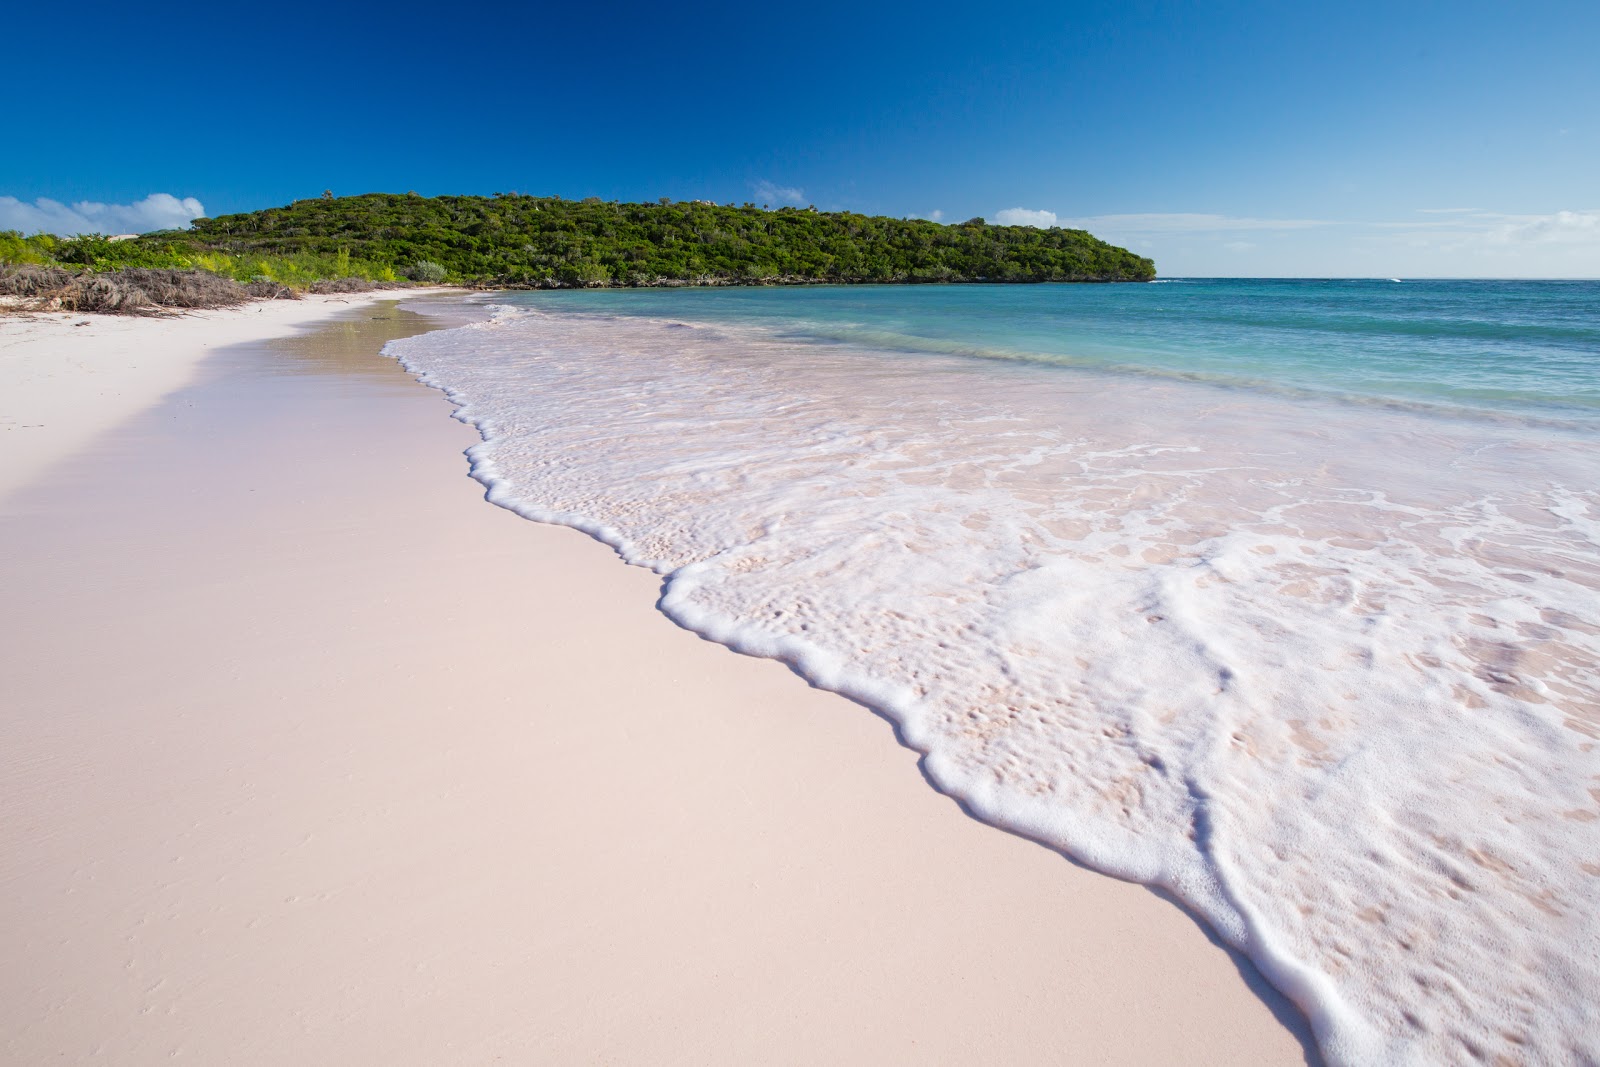 Foto von Cotton Bay beach mit heller feiner sand Oberfläche